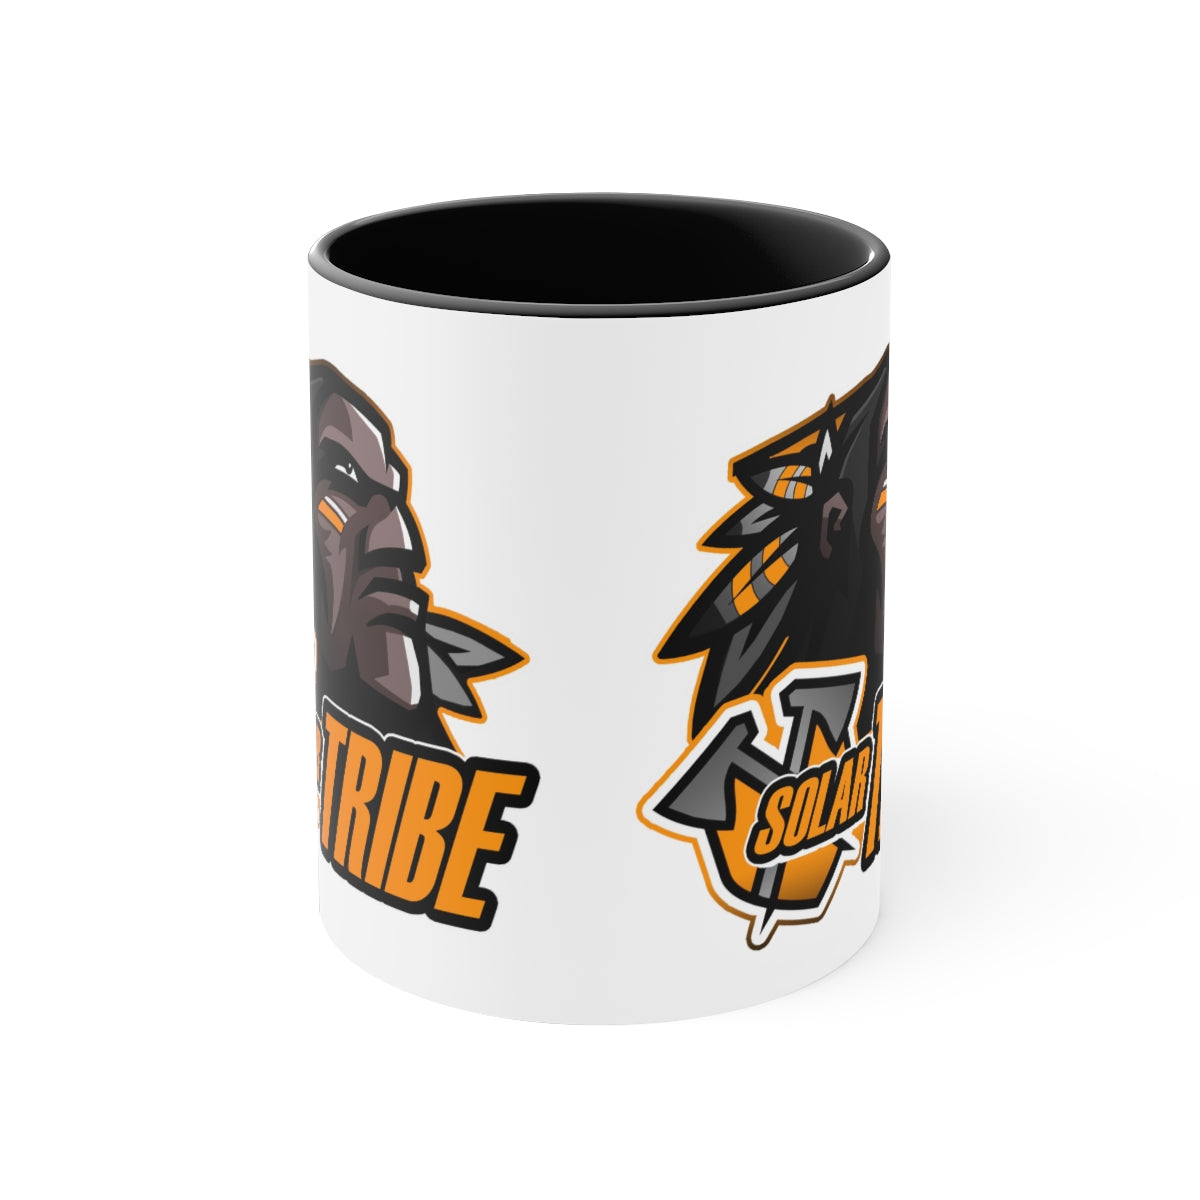 Solar Tribe Accent Coffee Mug, 11oz